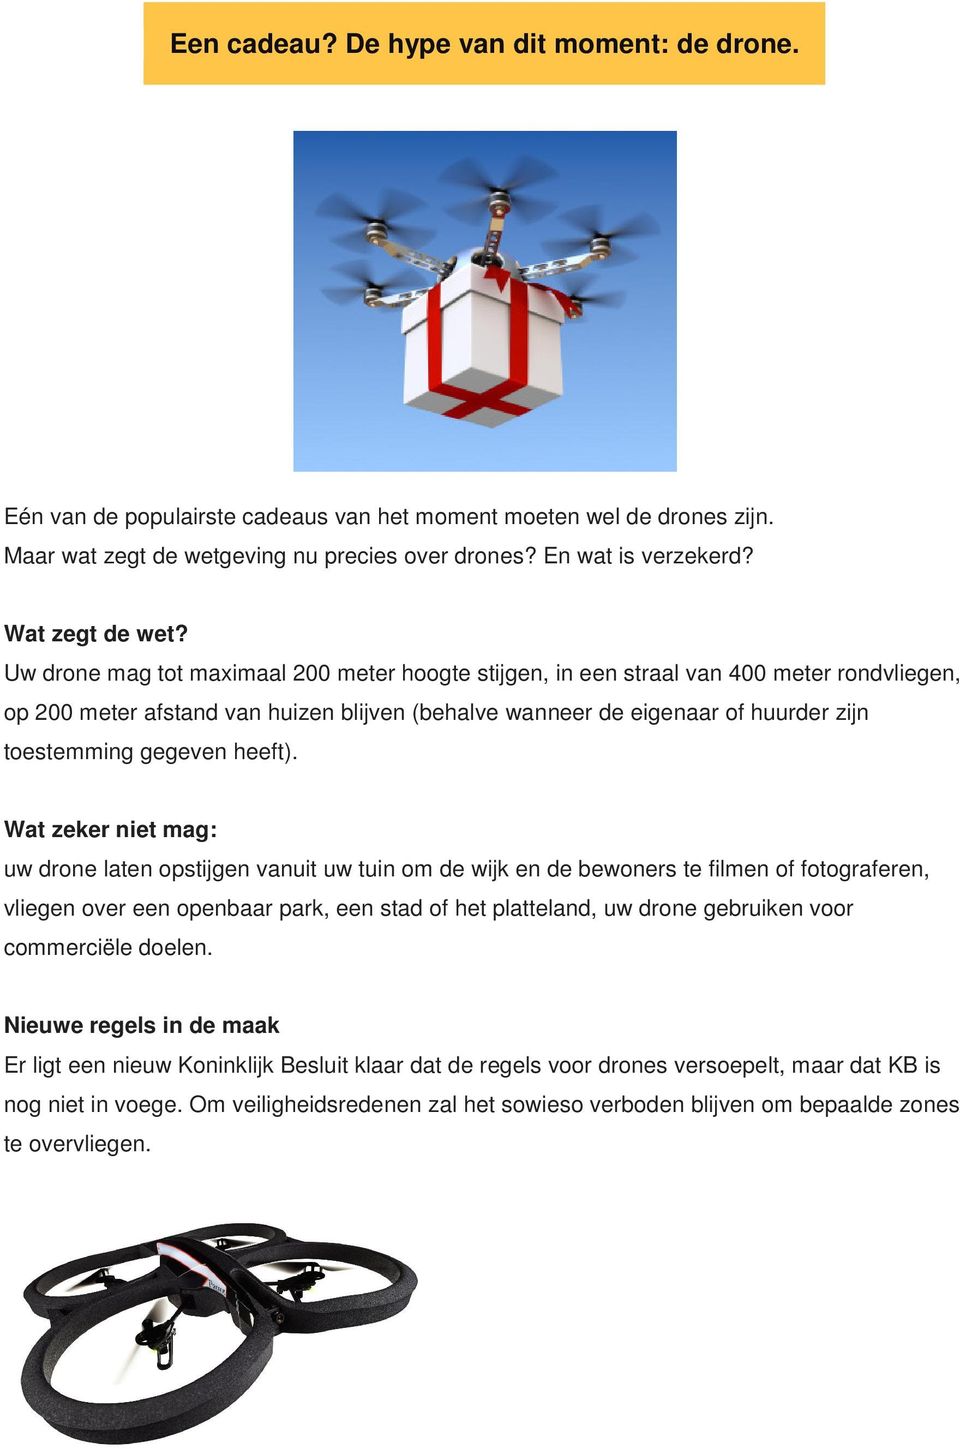 Uw drone mag tot maximaal 200 meter hoogte stijgen, in een straal van 400 meter rondvliegen, op 200 meter afstand van huizen blijven (behalve wanneer de eigenaar of huurder zijn toestemming gegeven